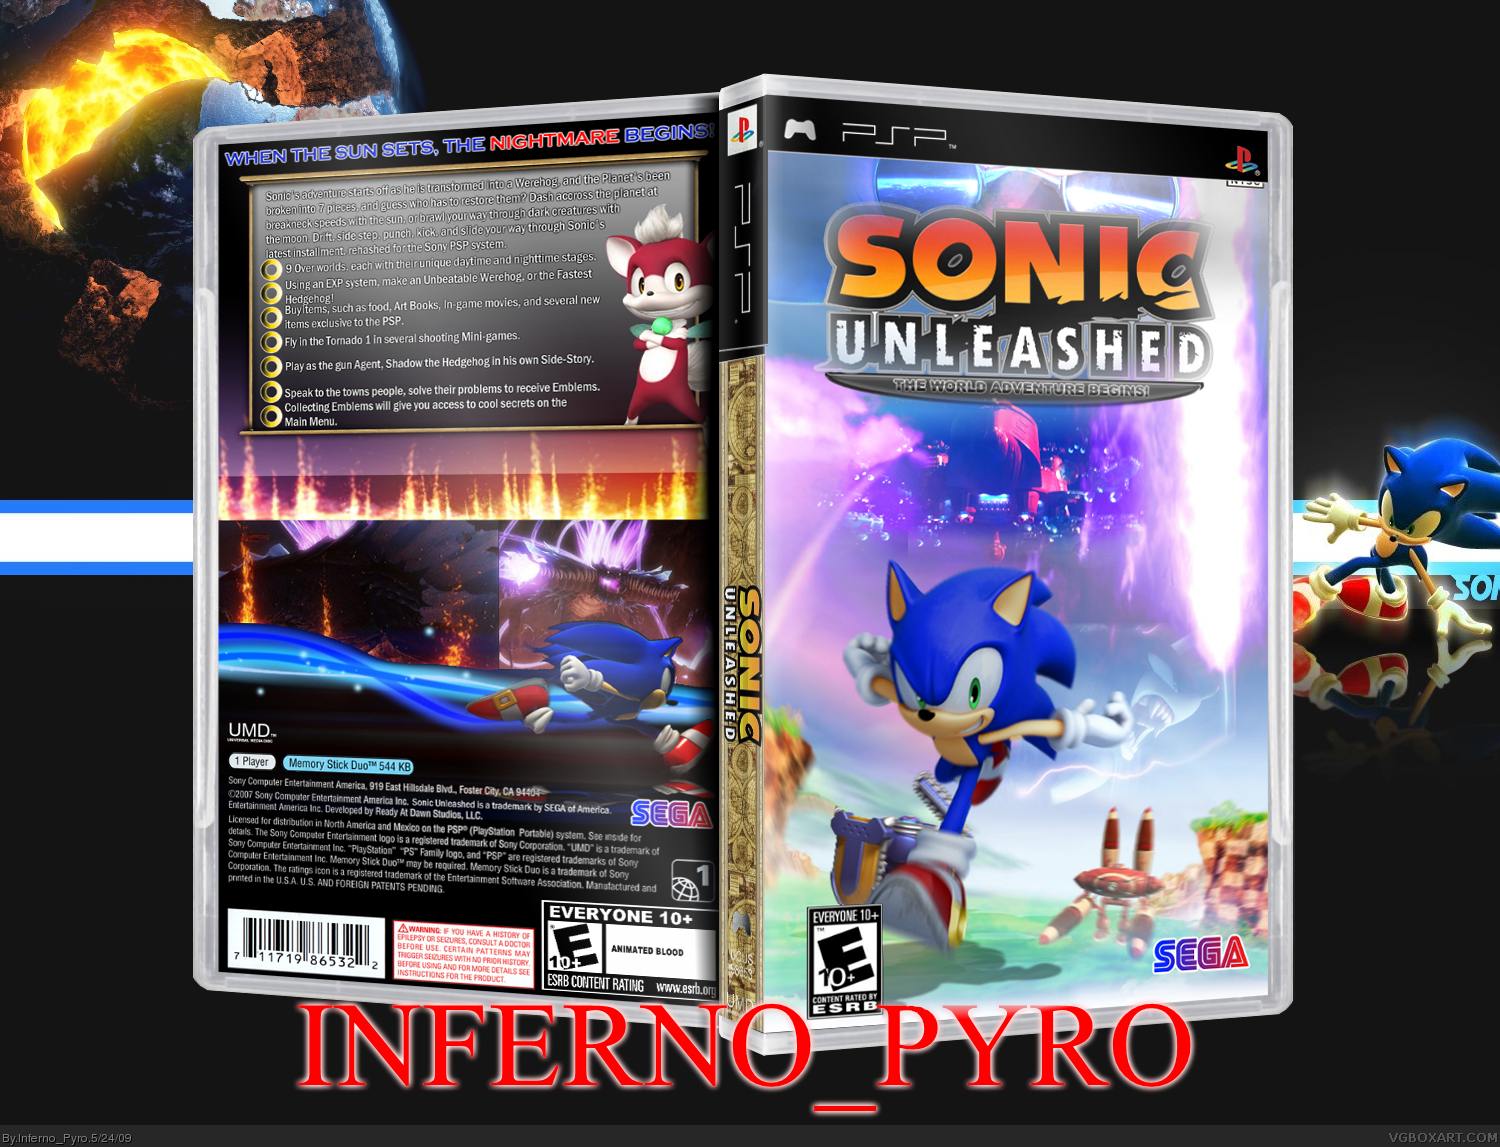 Соник пс3. Диск PSP Sonic Rivals 2. Sonic unleashed Xbox диск. Sonic unleashed Xbox 360 обложка. Соник Анлишед на Xbox 360.